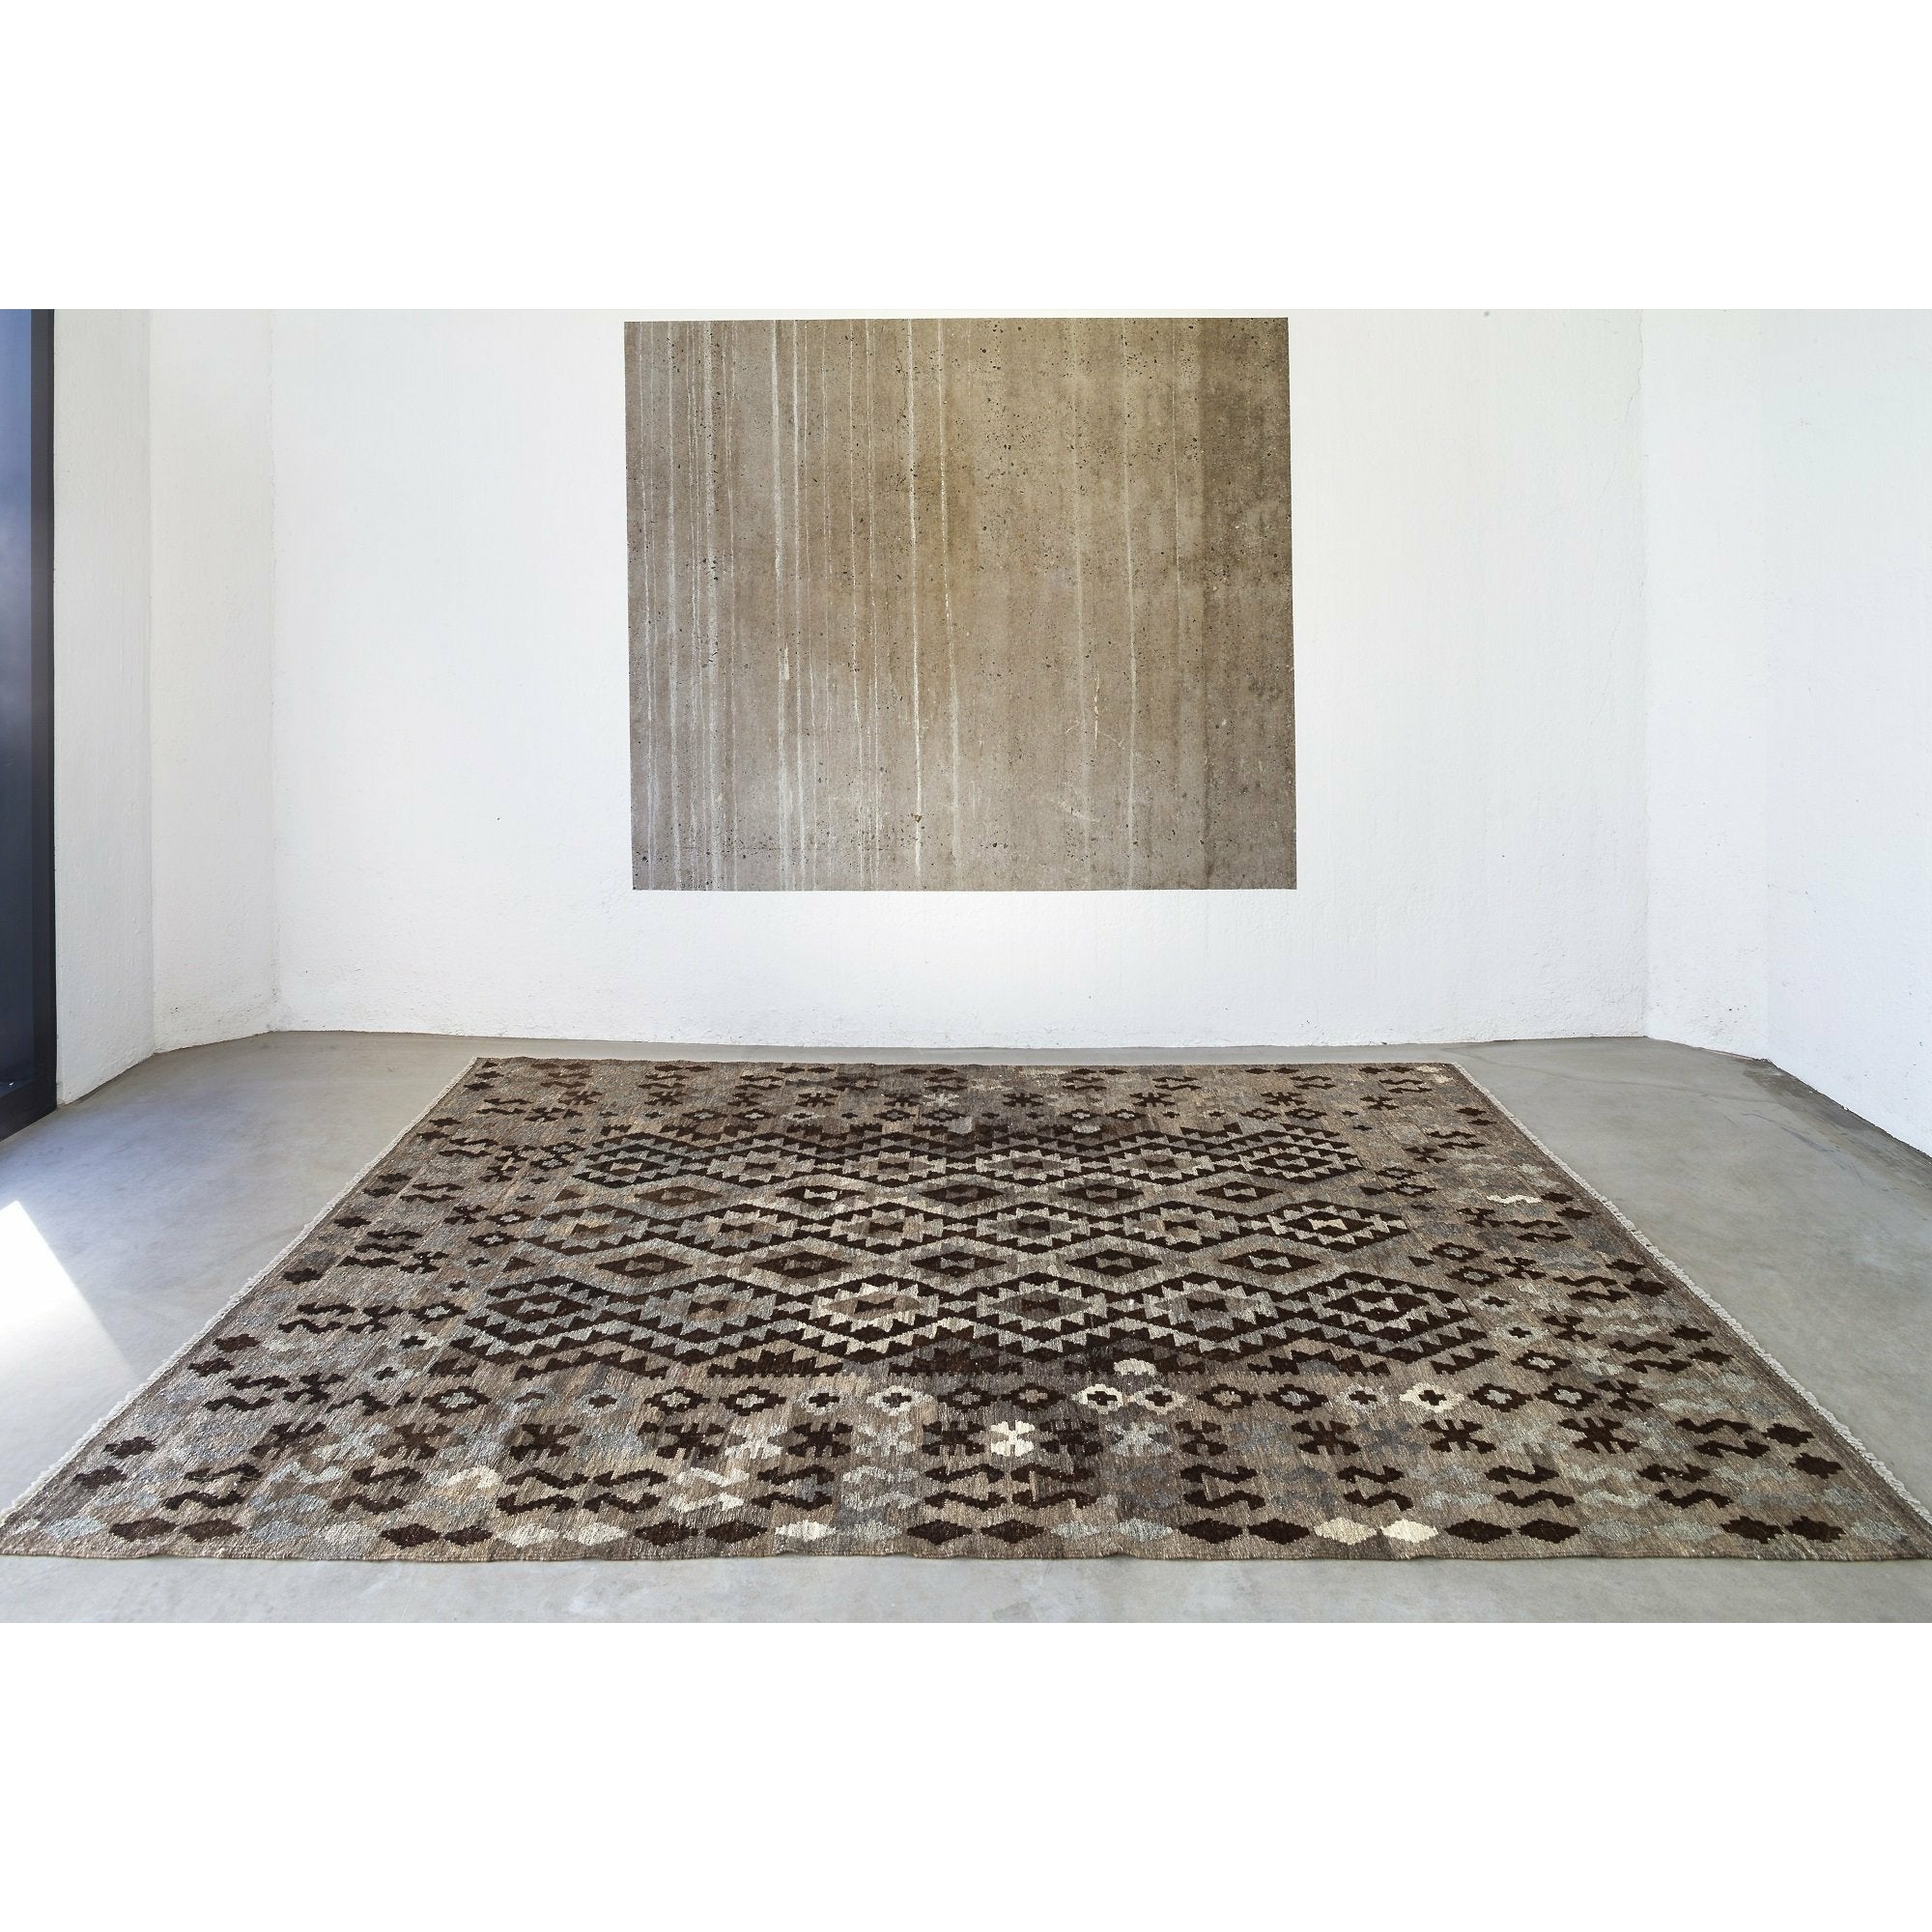 Massimo Kelim Teppich natürlicher dunkelgrau/braun/schwarz, 170x240 cm